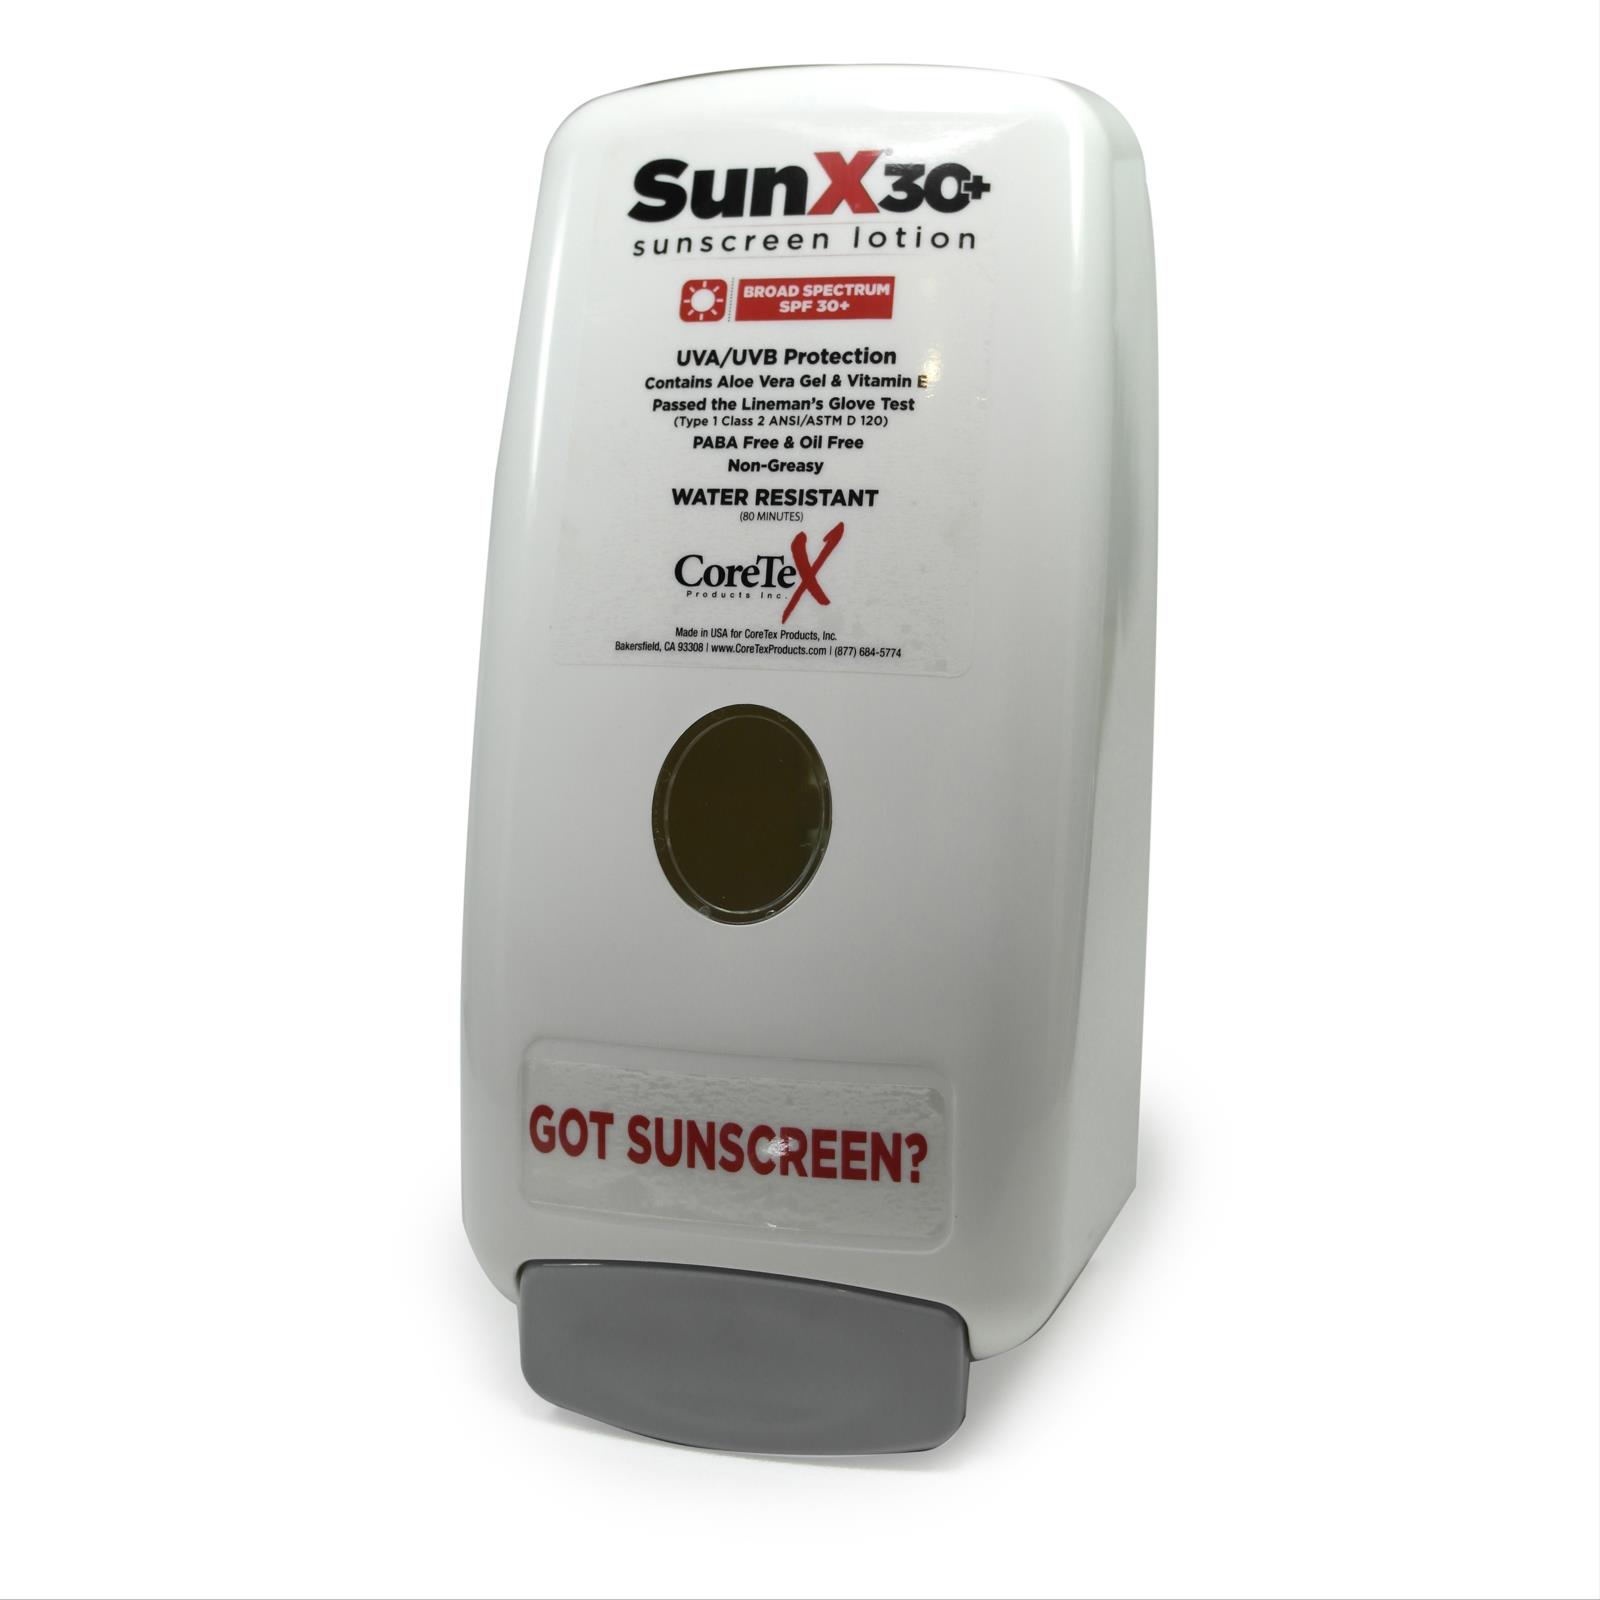 SunX30+ Broad Spectrum Sunscreen Wall Dispenser and 750ml Bladder